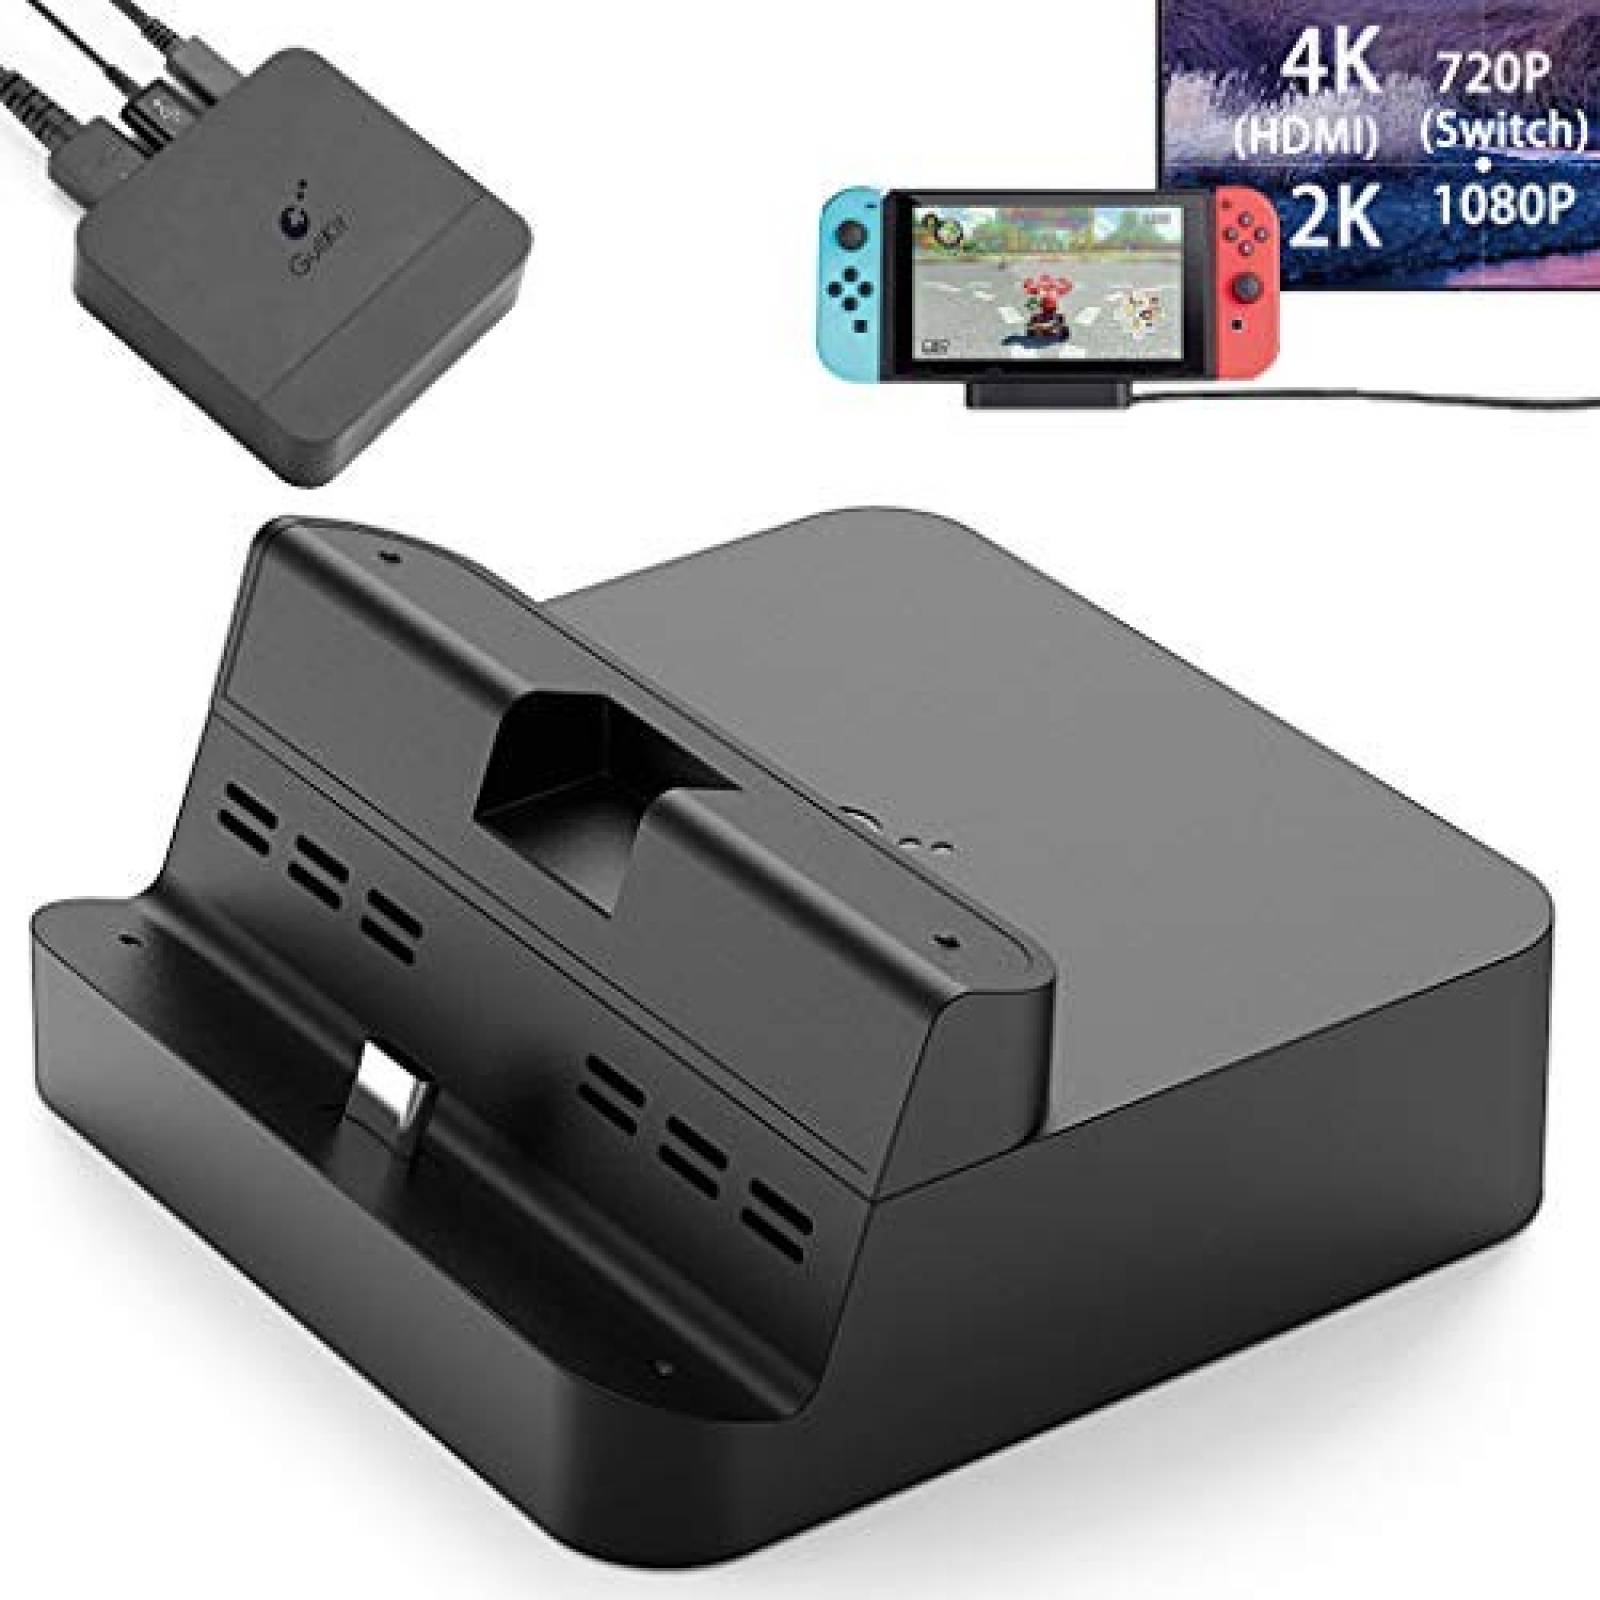 Base de carga transmisión Antank para Nintendo Switch -Negro